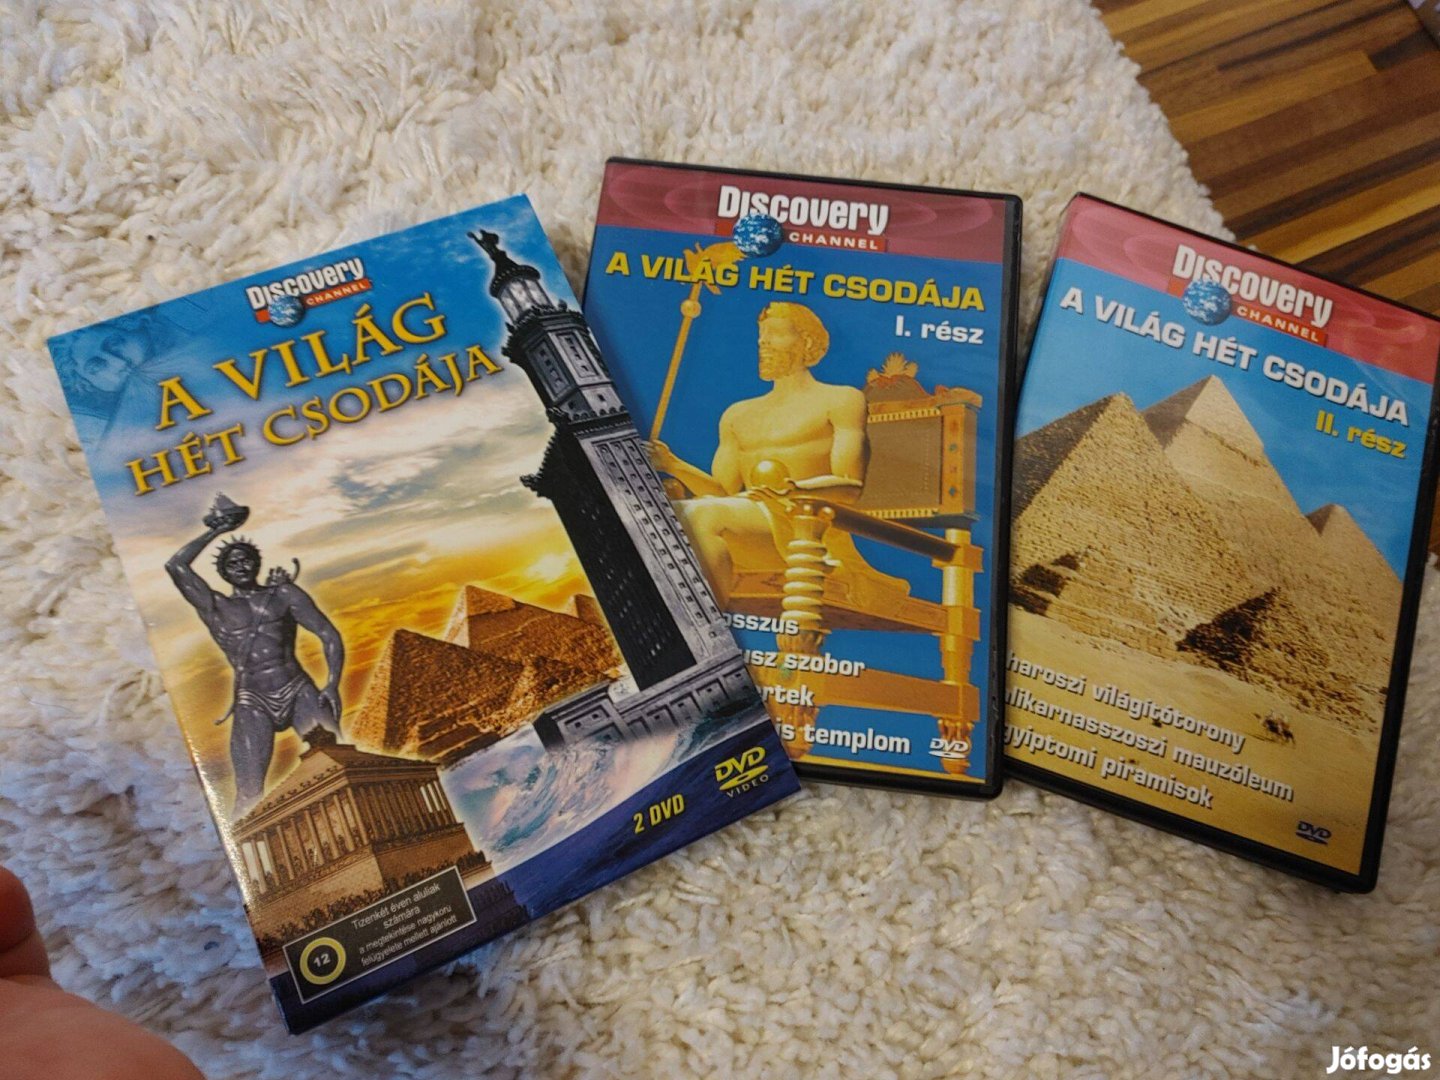 Discovery A világ hét csodája egyiptomi piramisok könyvek 1900Ft/db